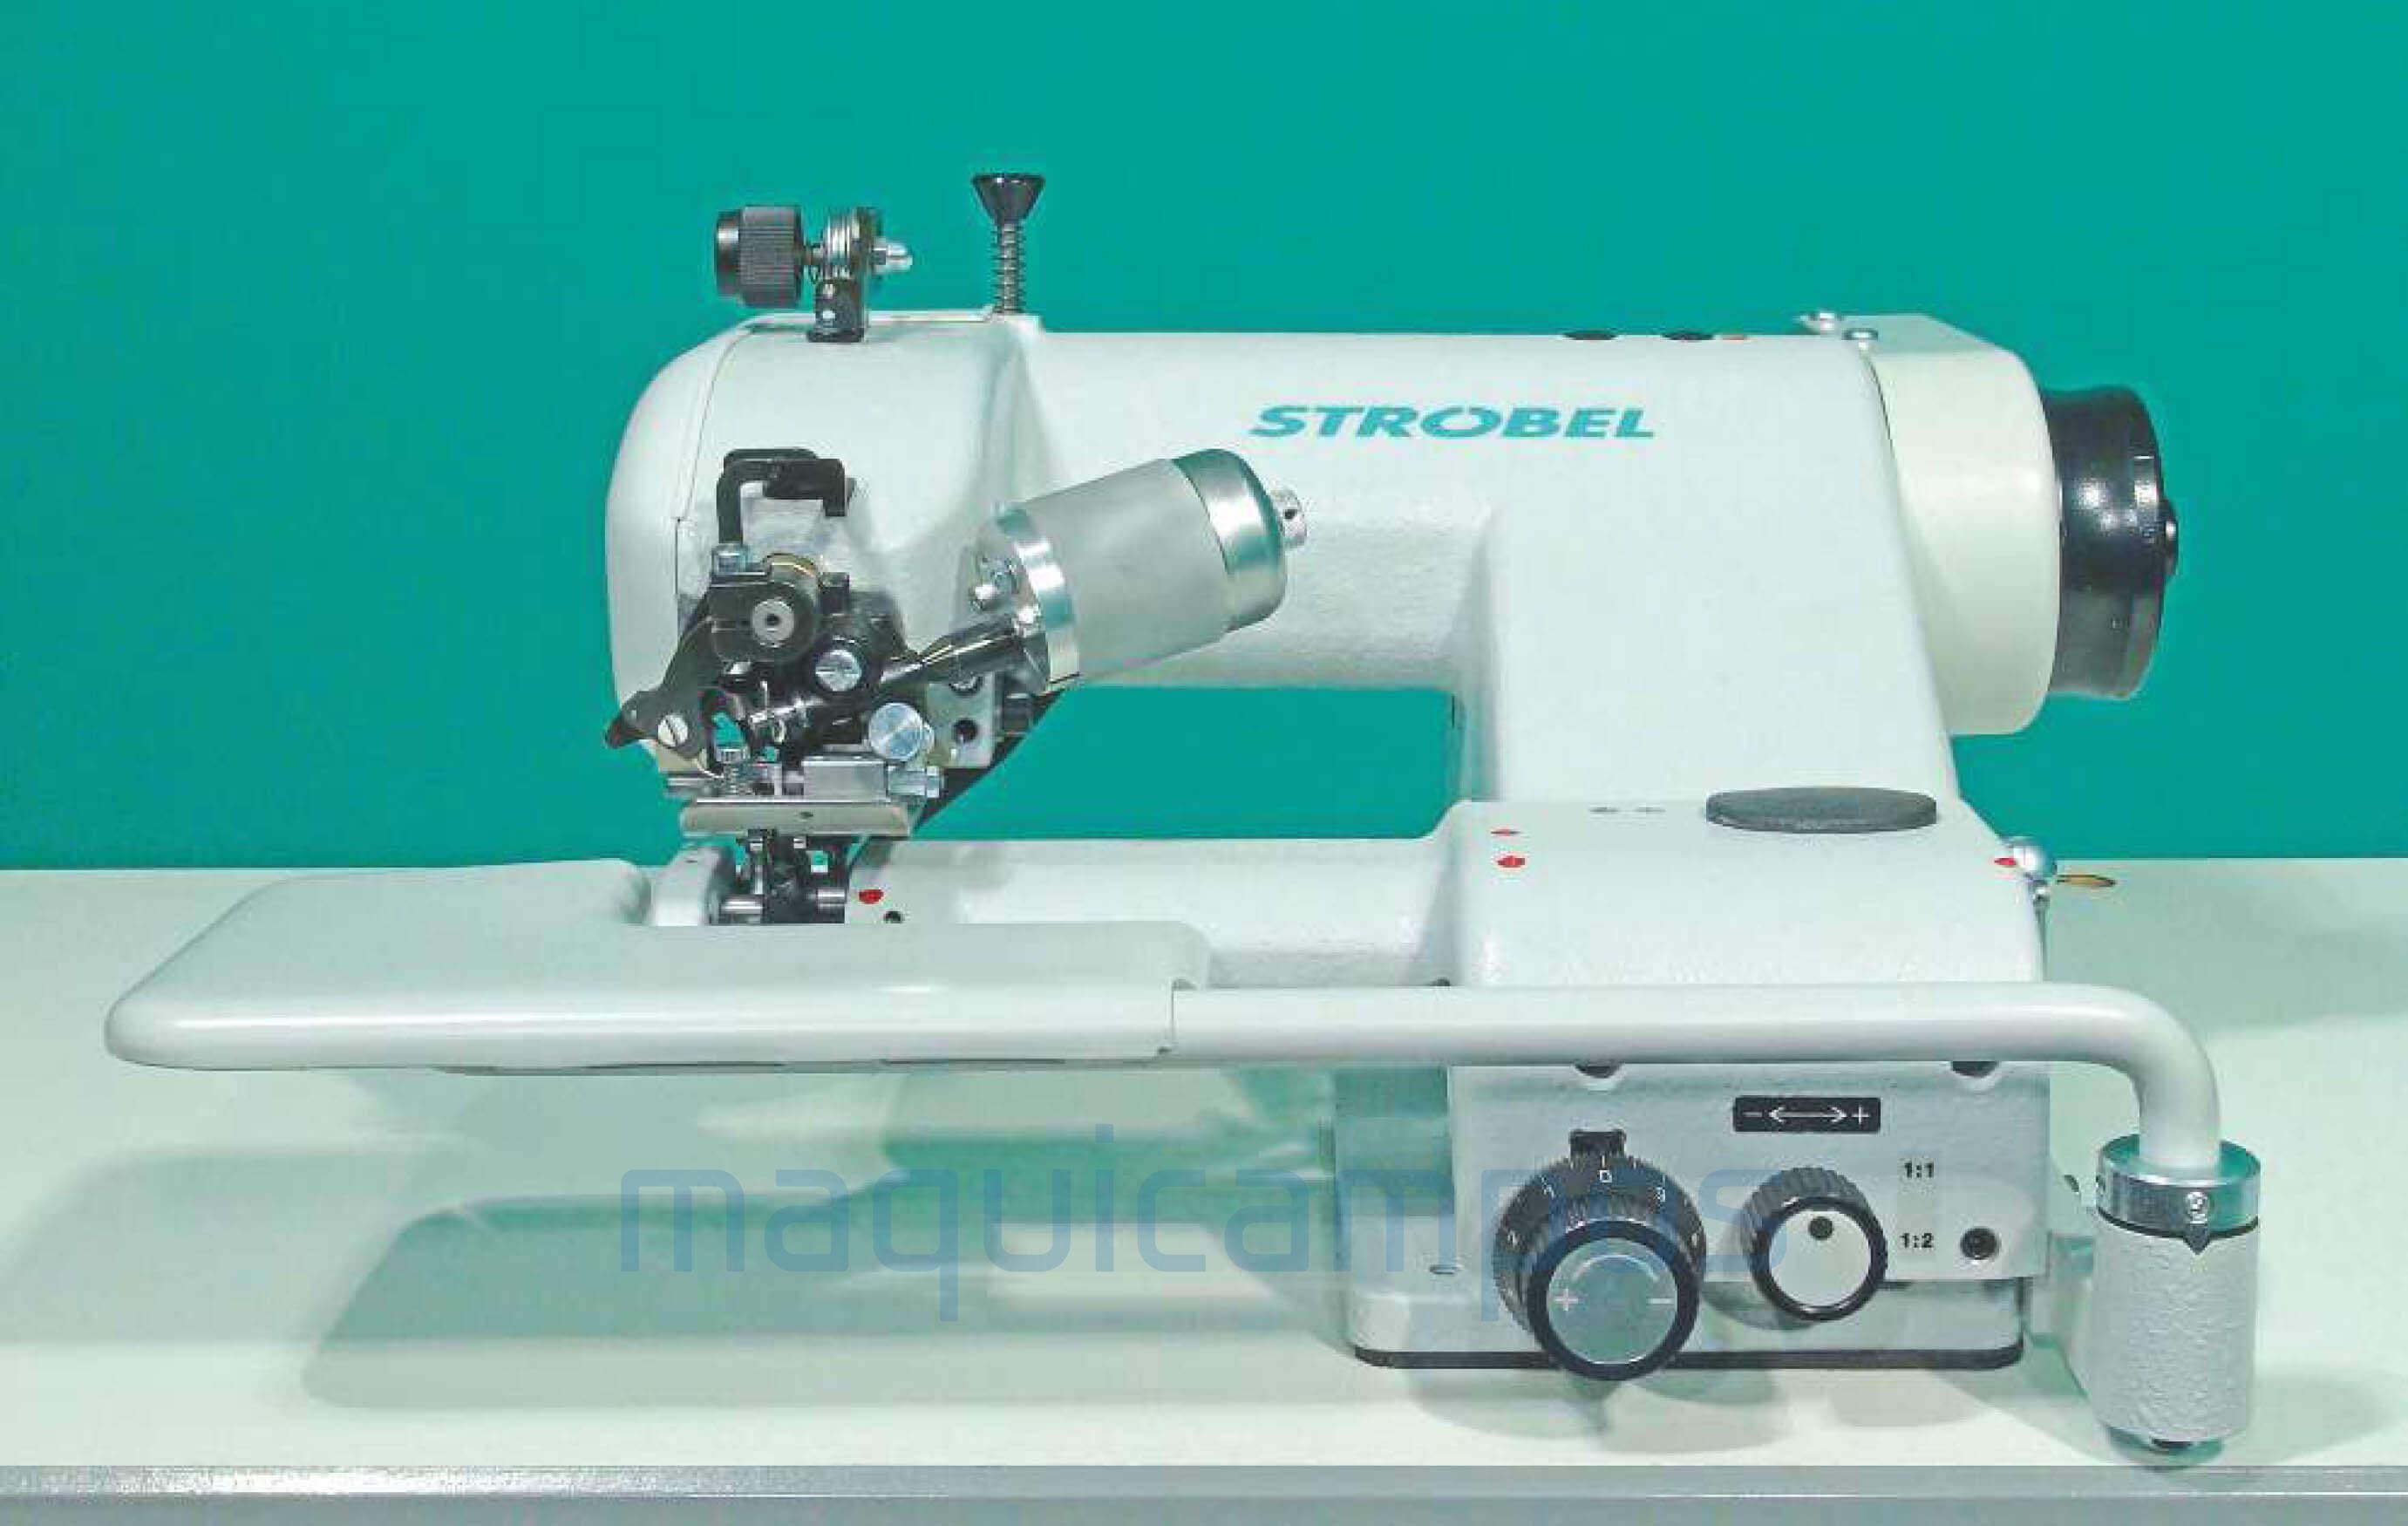 Strobel VEB 100-2 Blindstitch Sewing Machine